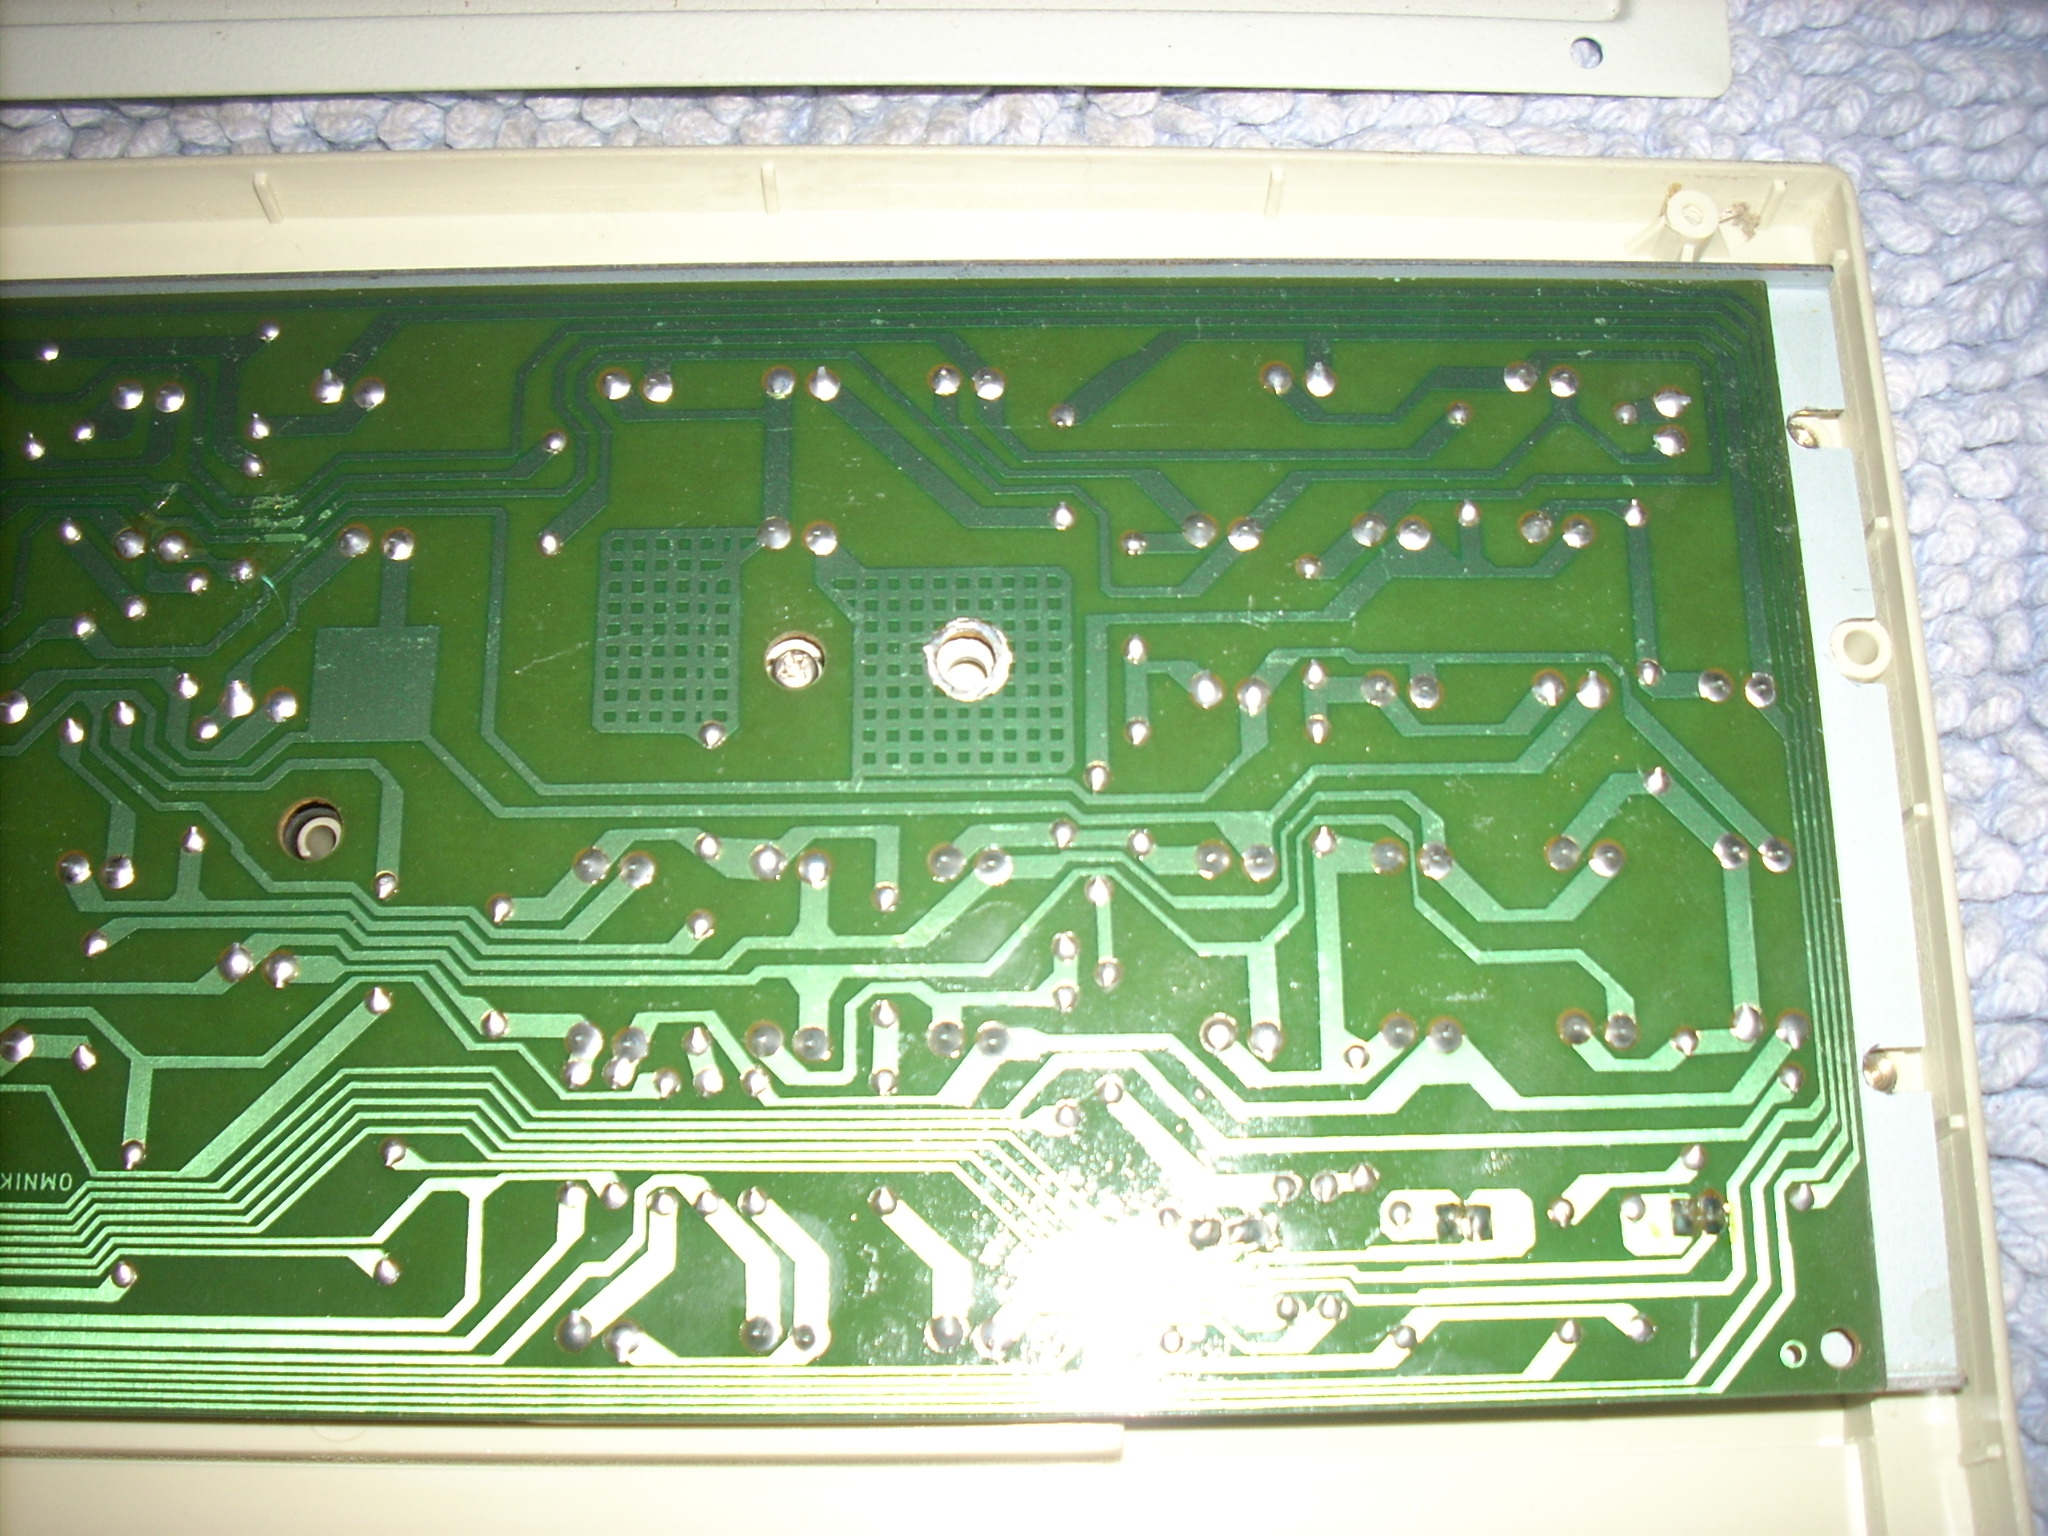 Gen2 PC board detail.